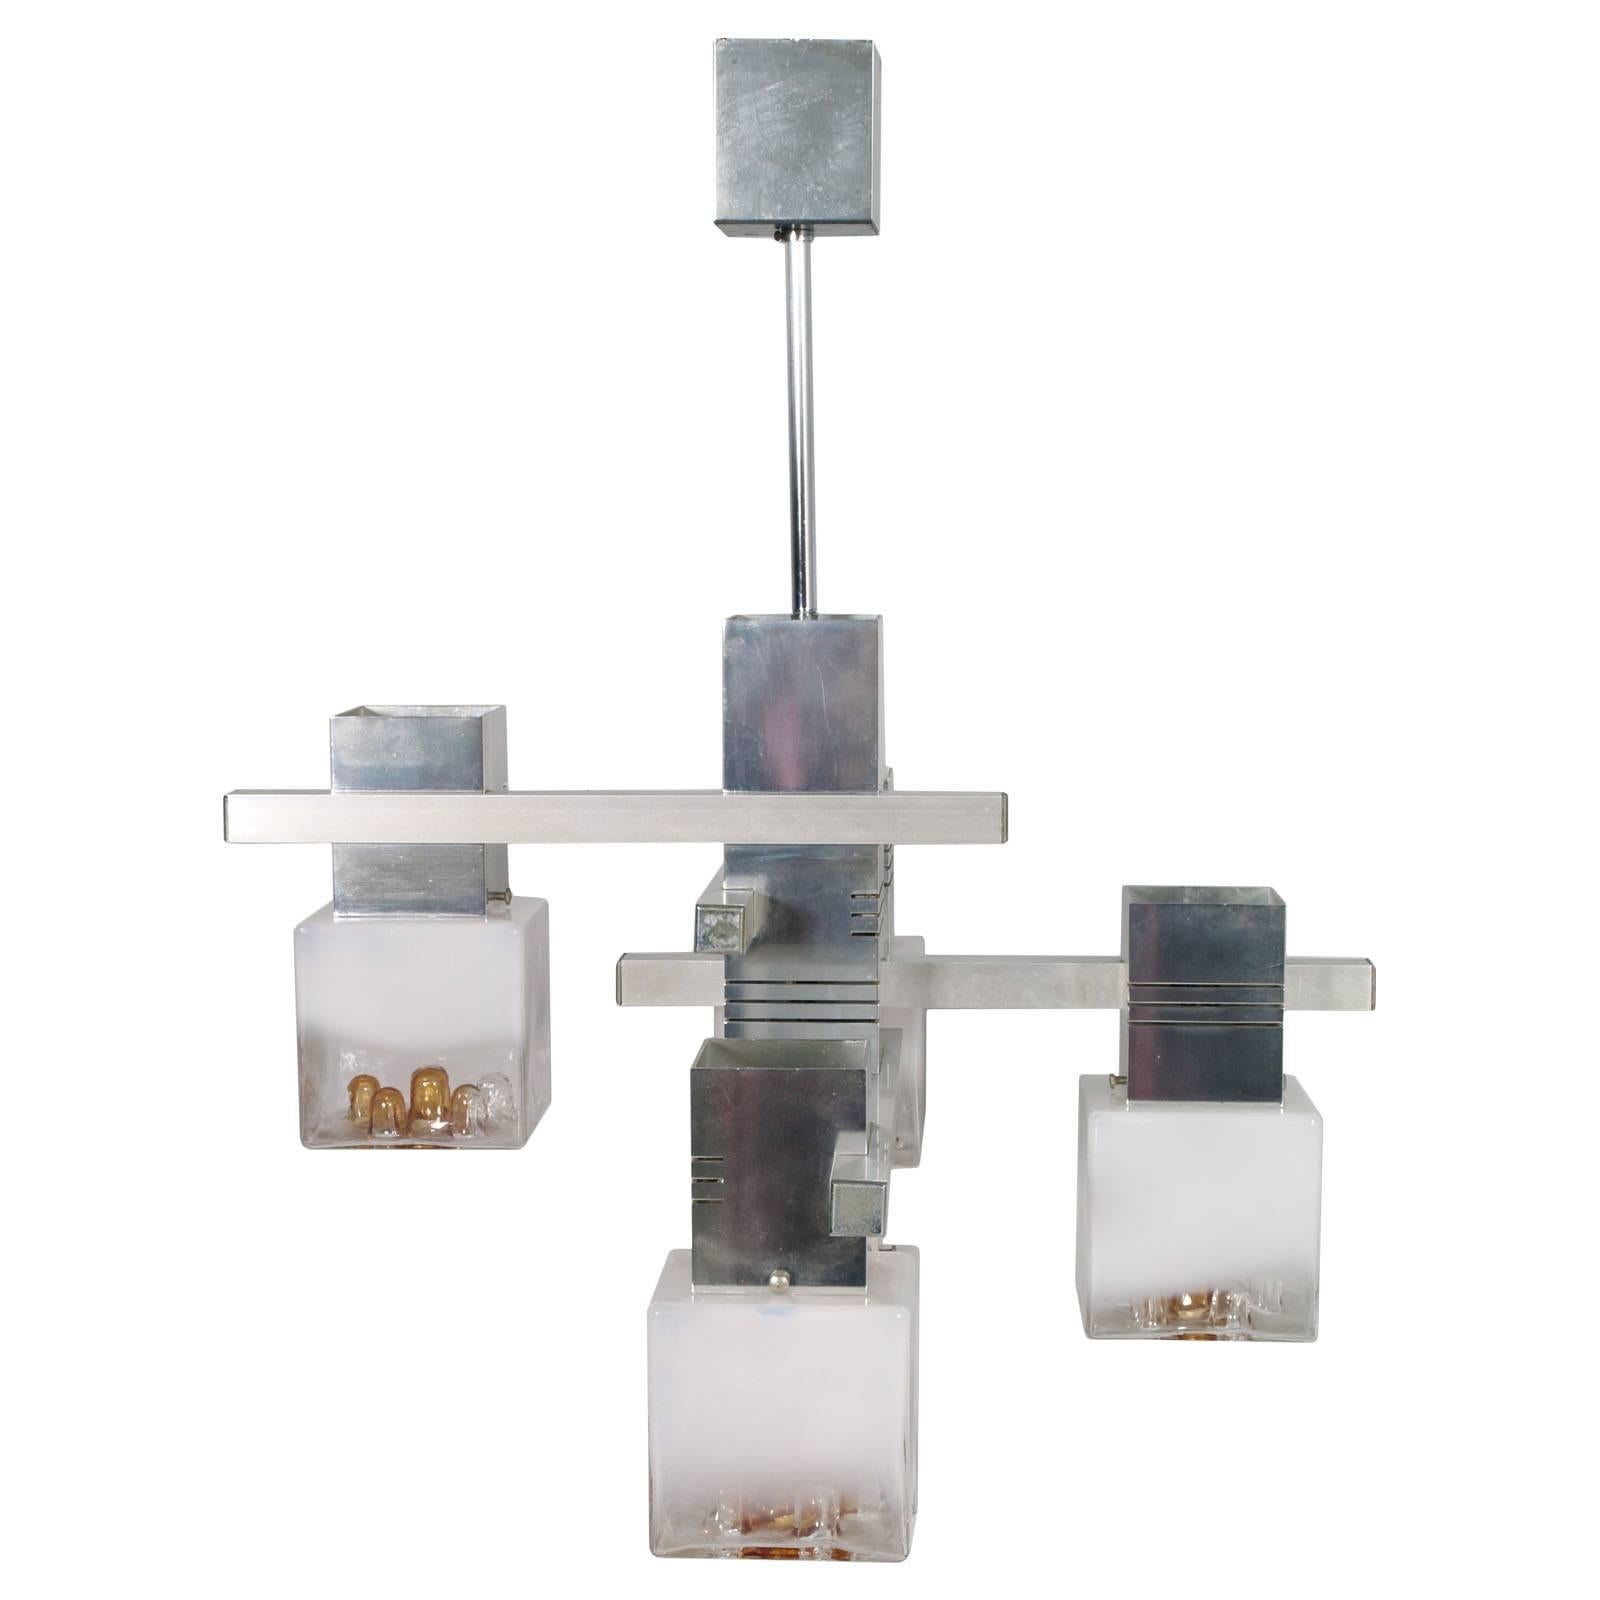 Charmant lustre des années 1970 avec structure en aluminium et cinq lampes cubiques en verre de Murano par Mazzega.
Système électrique refait, prêt à l'emploi.

Dimensions en cm : D 60, L 60, H 77.